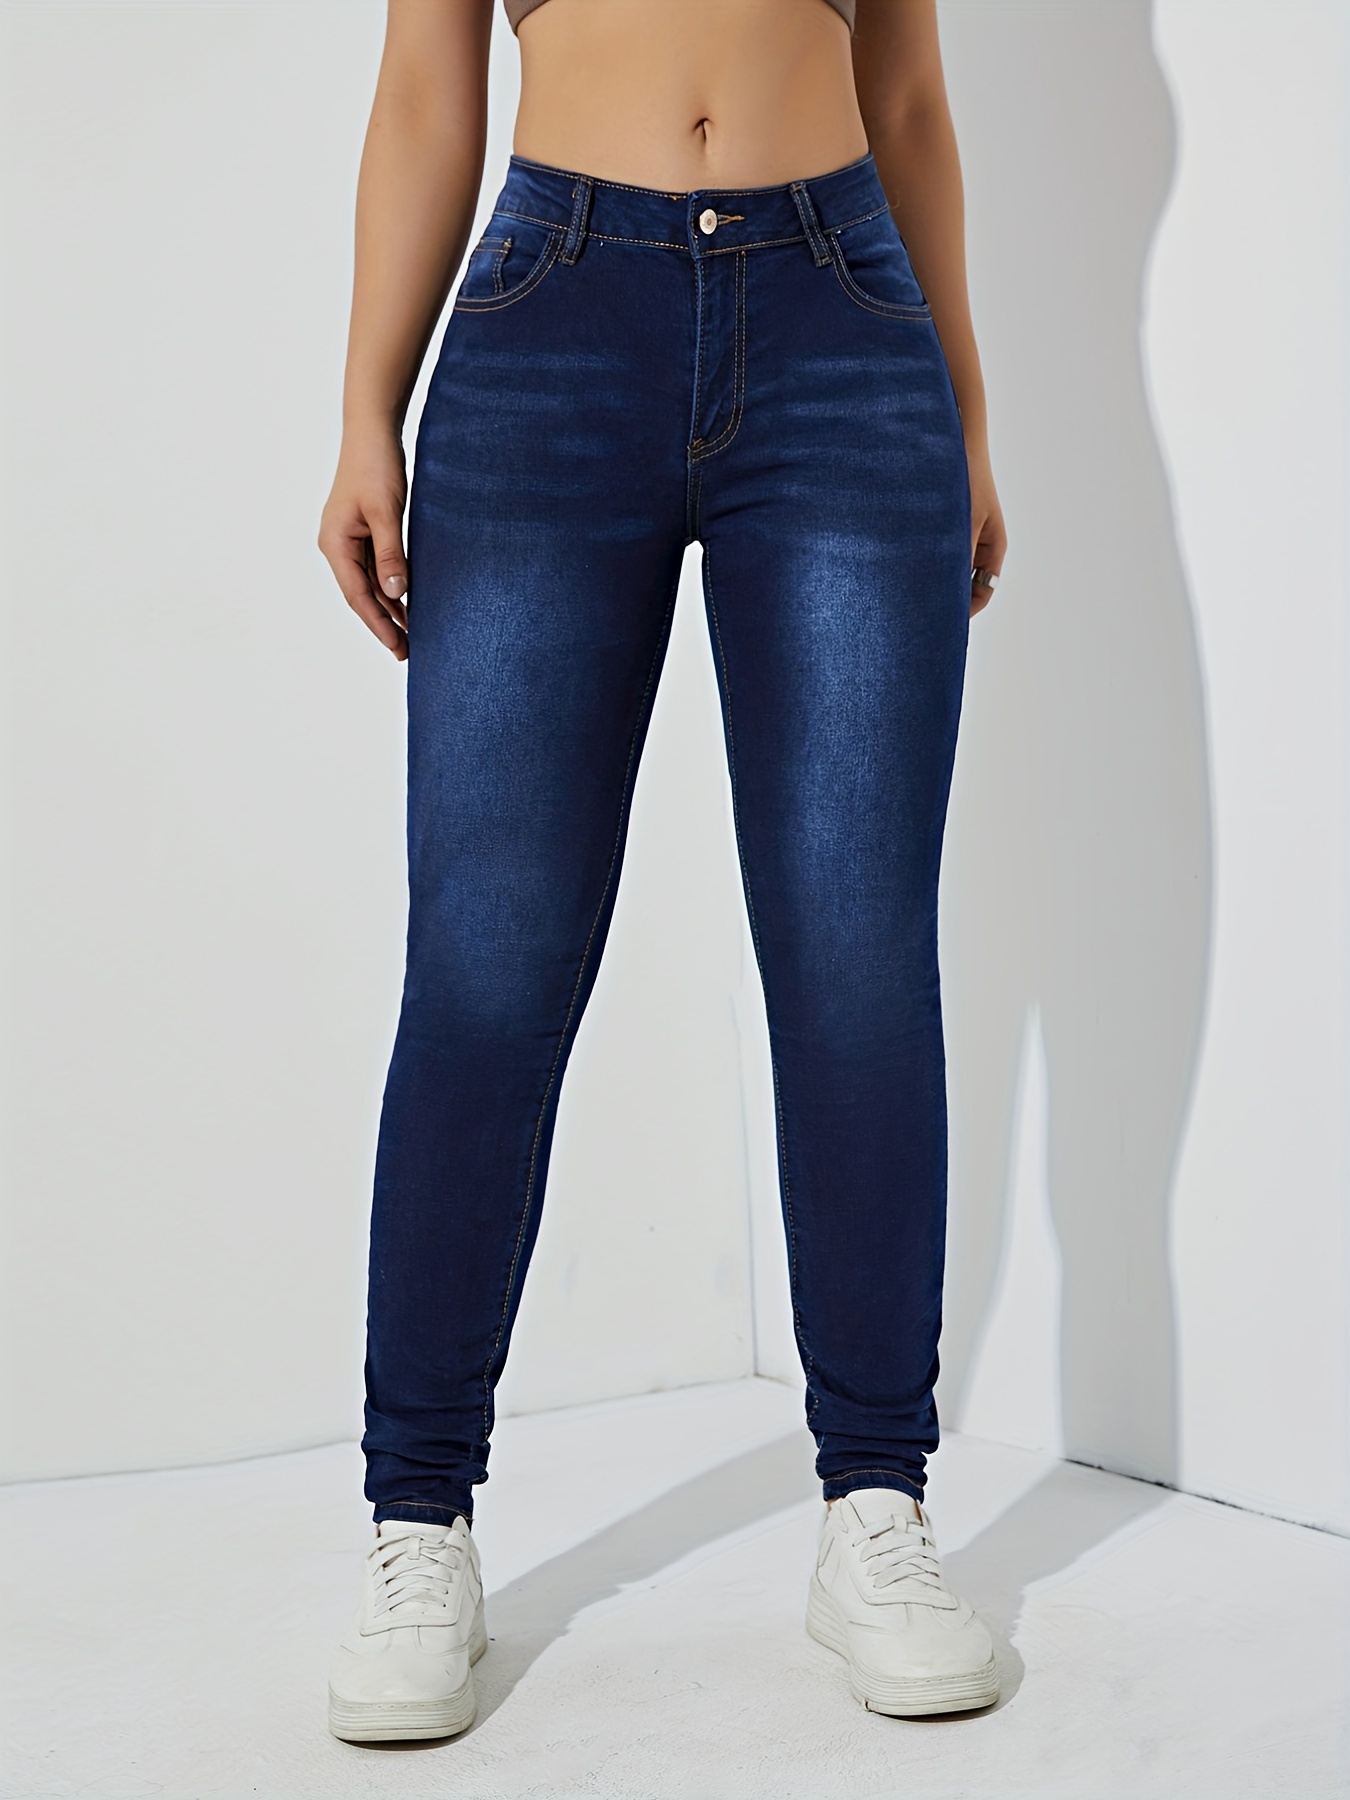 MIASHUI - Jeans de cintura alta para mujer, pantalones de